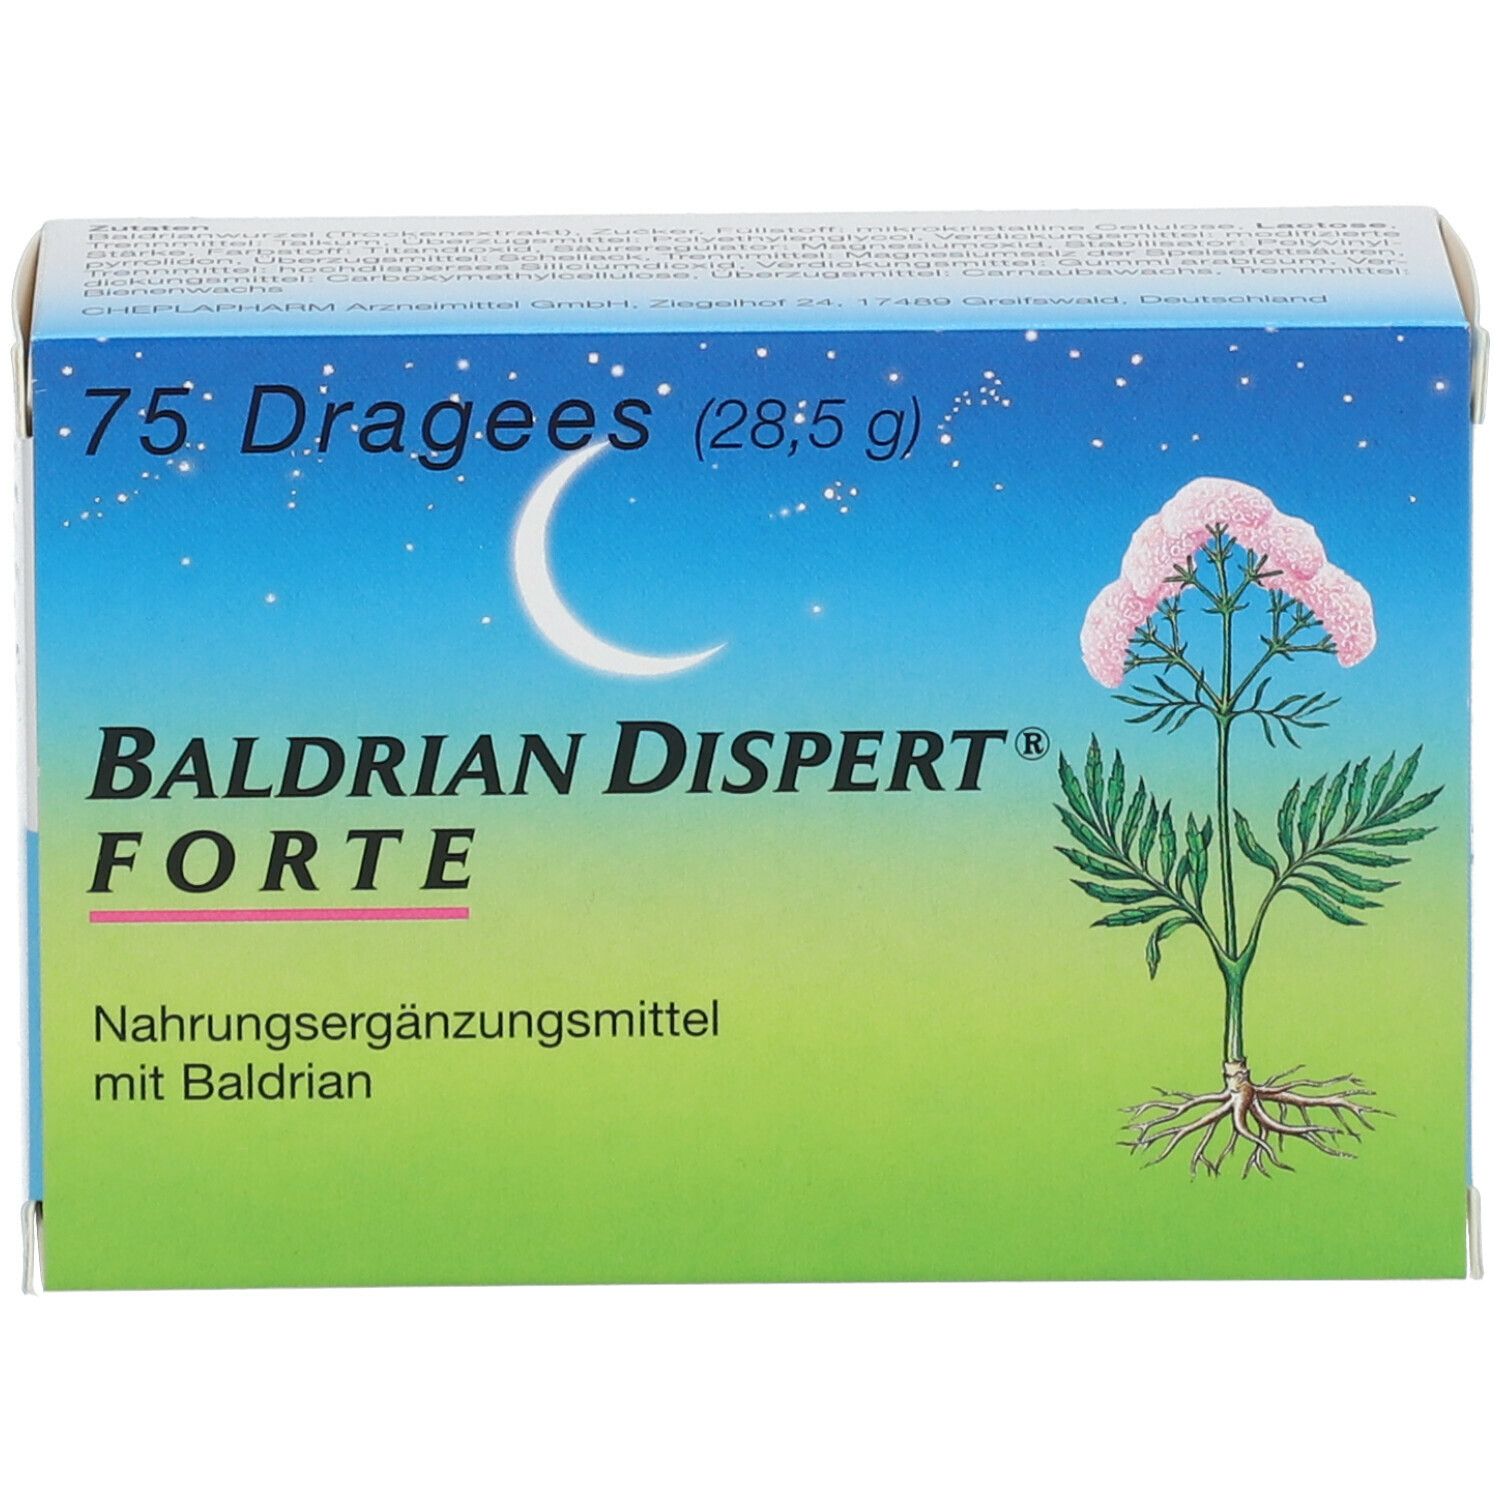 BALDRIAN DISPERT® FORTE